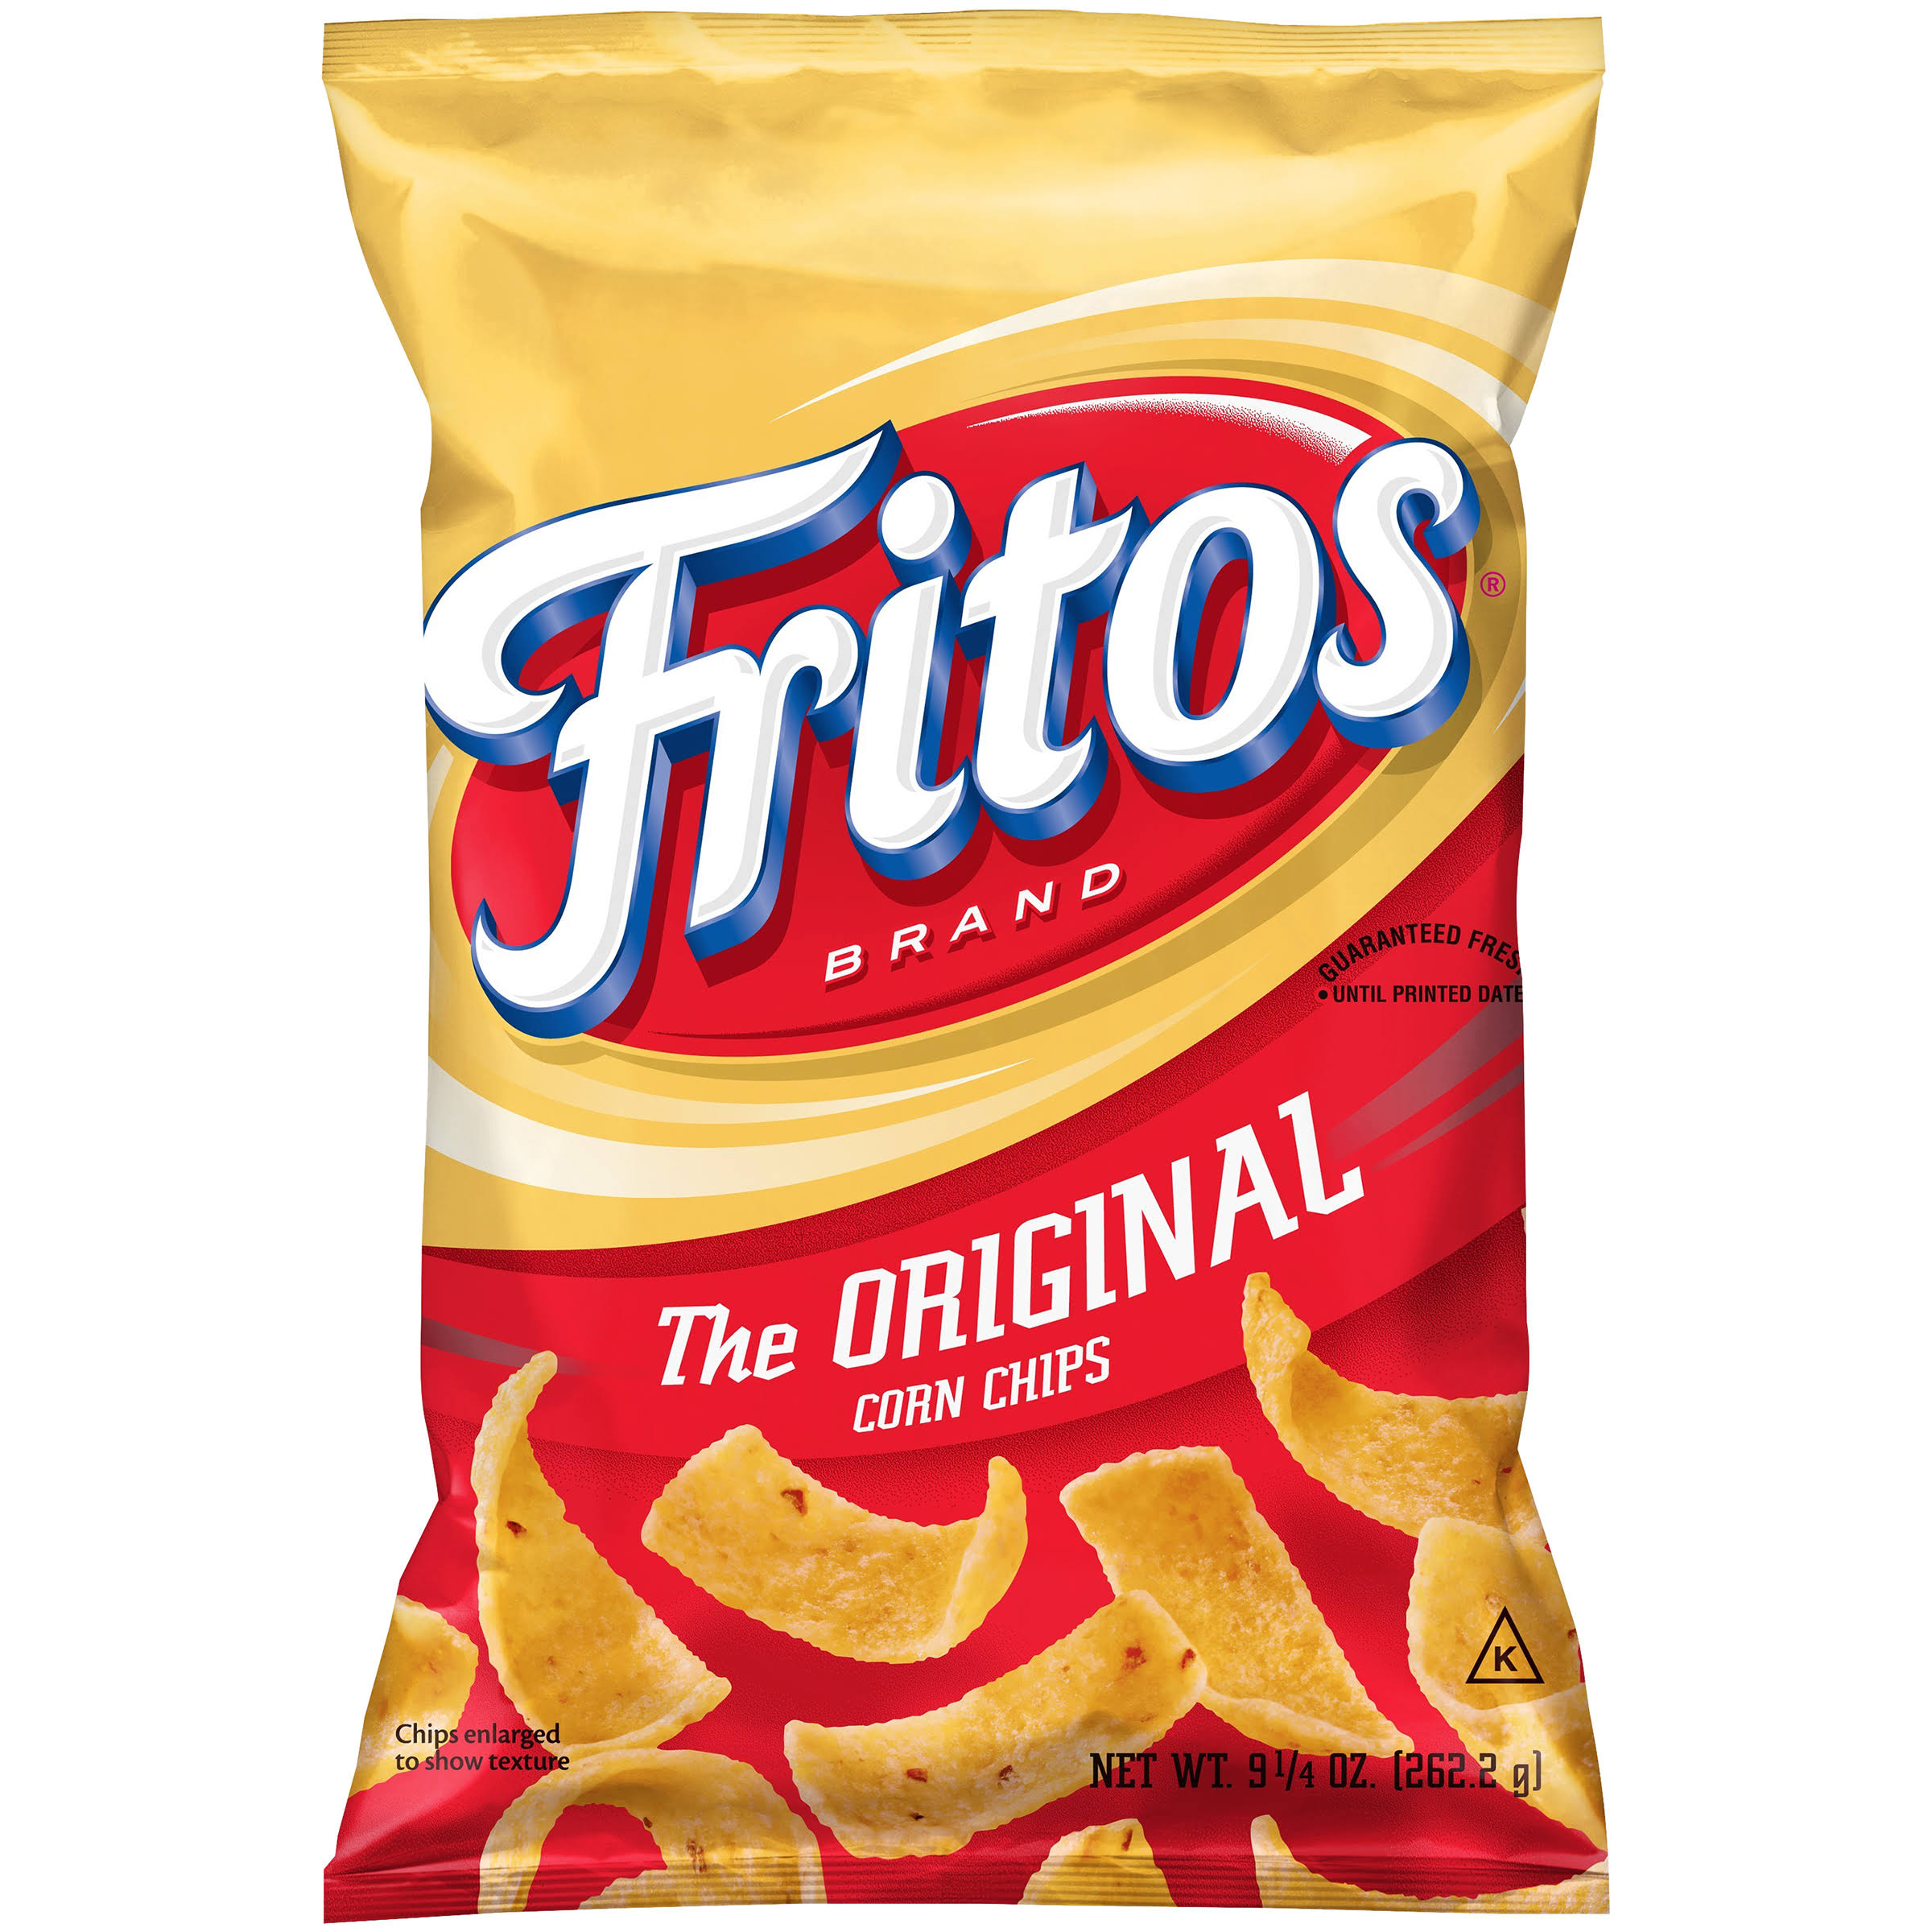 Fritos Corn Chips - Original, 9.25oz